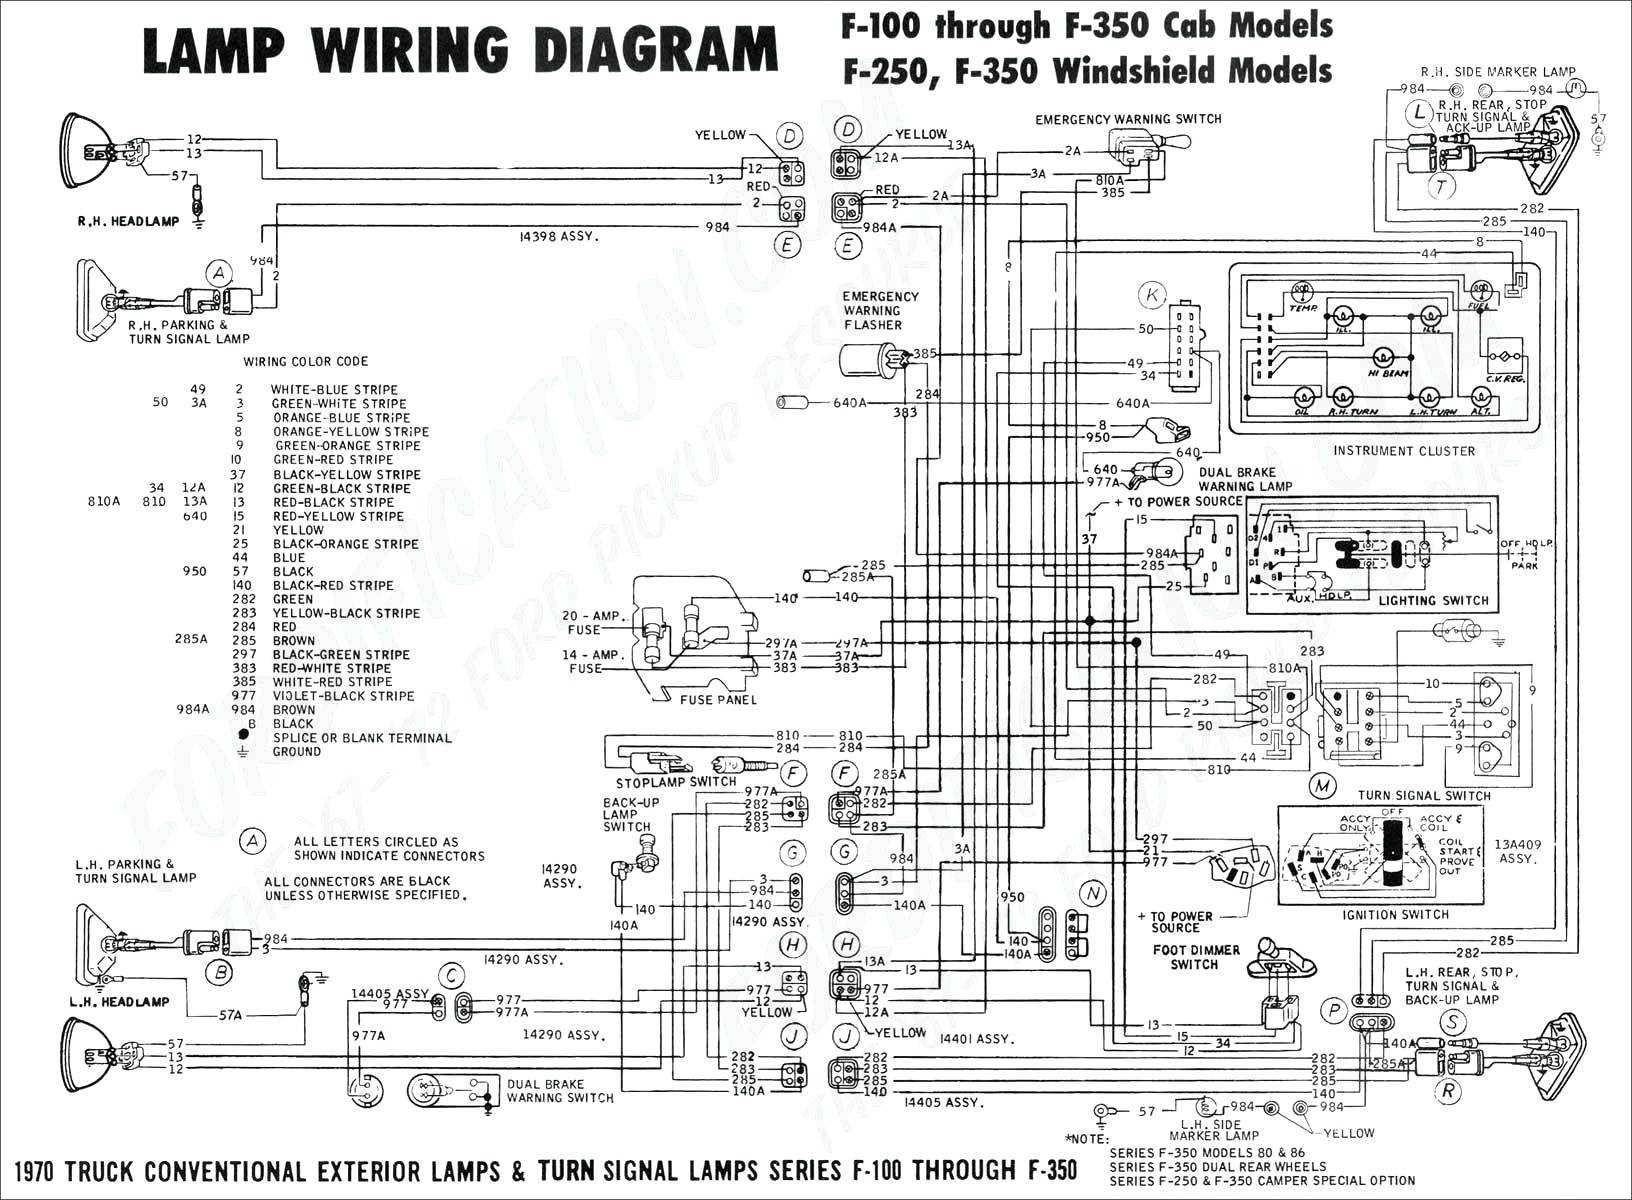 2002 f250 wiring diagram trusted wiring diagram u2022 rh soulmatestyle co 2004 ford f250 wiring diagram 2004 f250 headlight wiring diagram